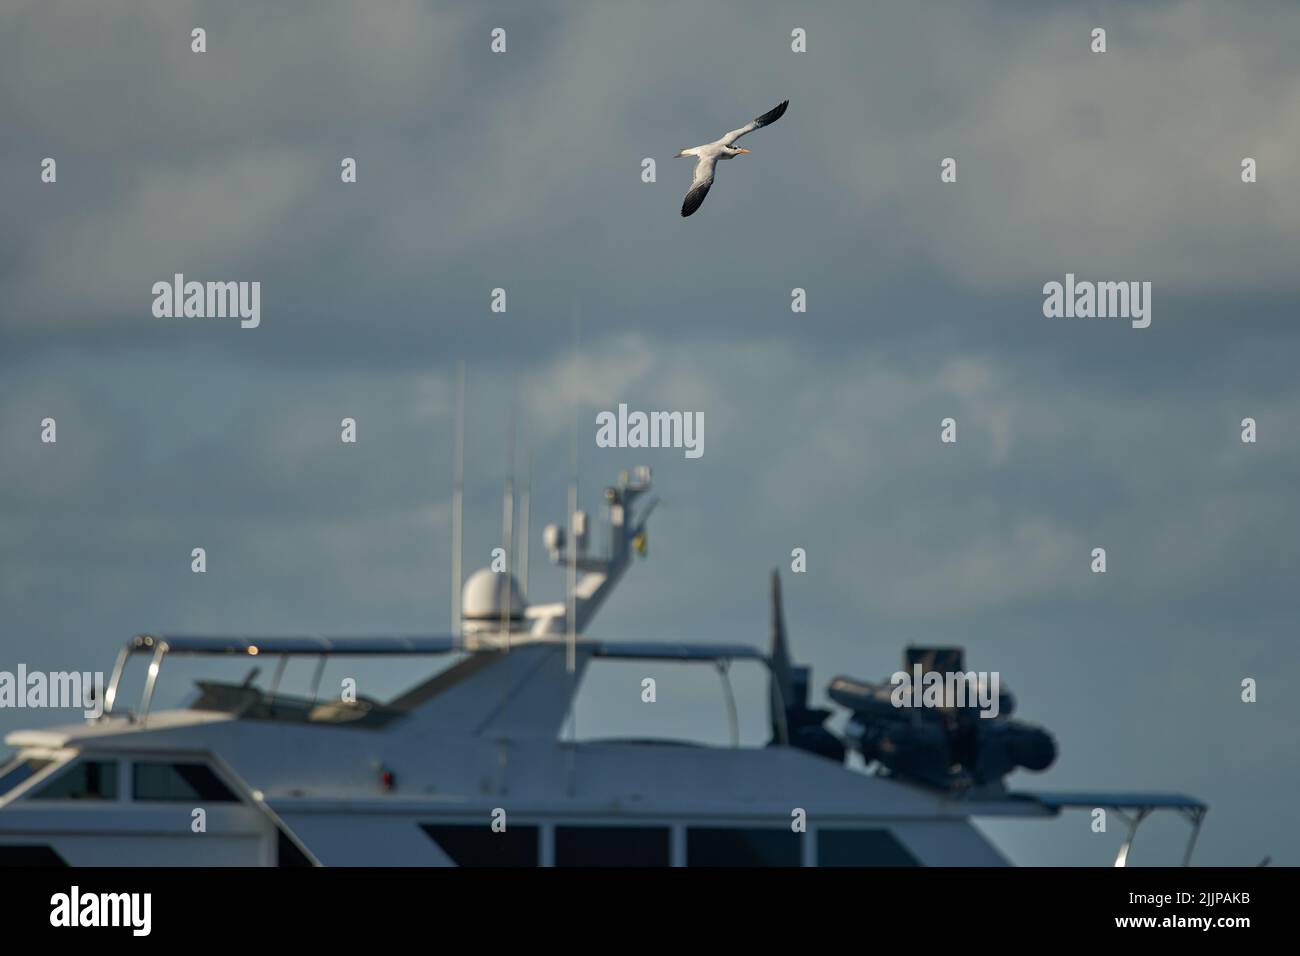 Una gannetta Australasiana con ali aperte che volano sopra uno yacht su uno sfondo blu del cielo - il concetto di libertà Foto Stock